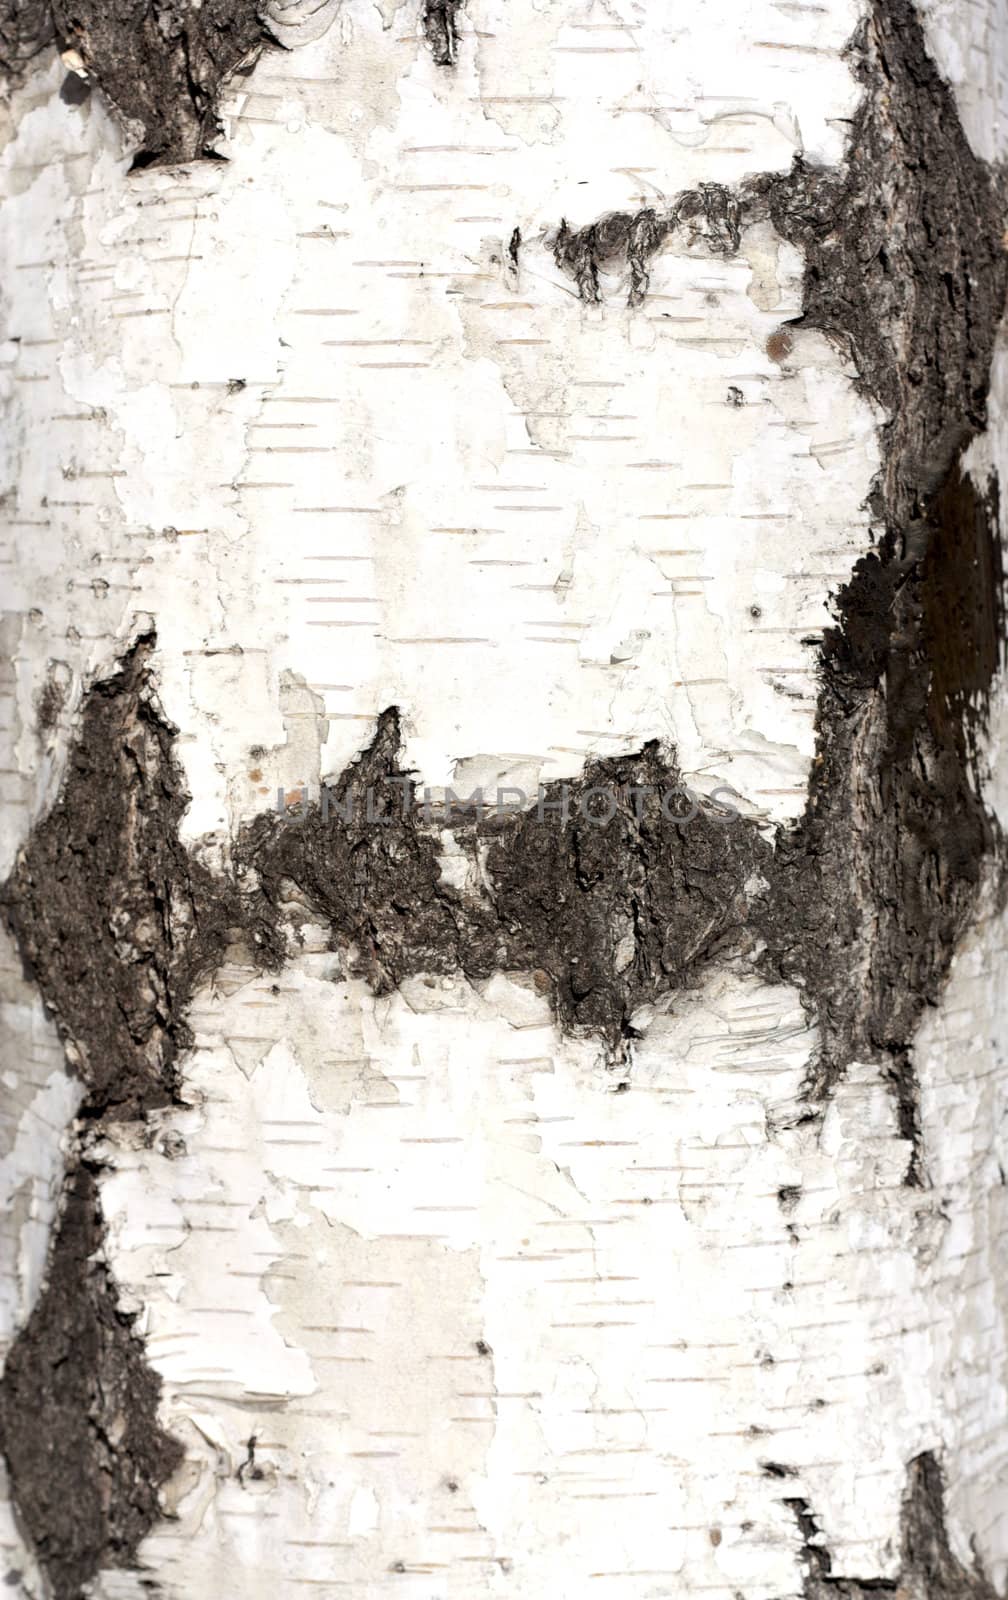 Texture of birch bark, background, by schankz